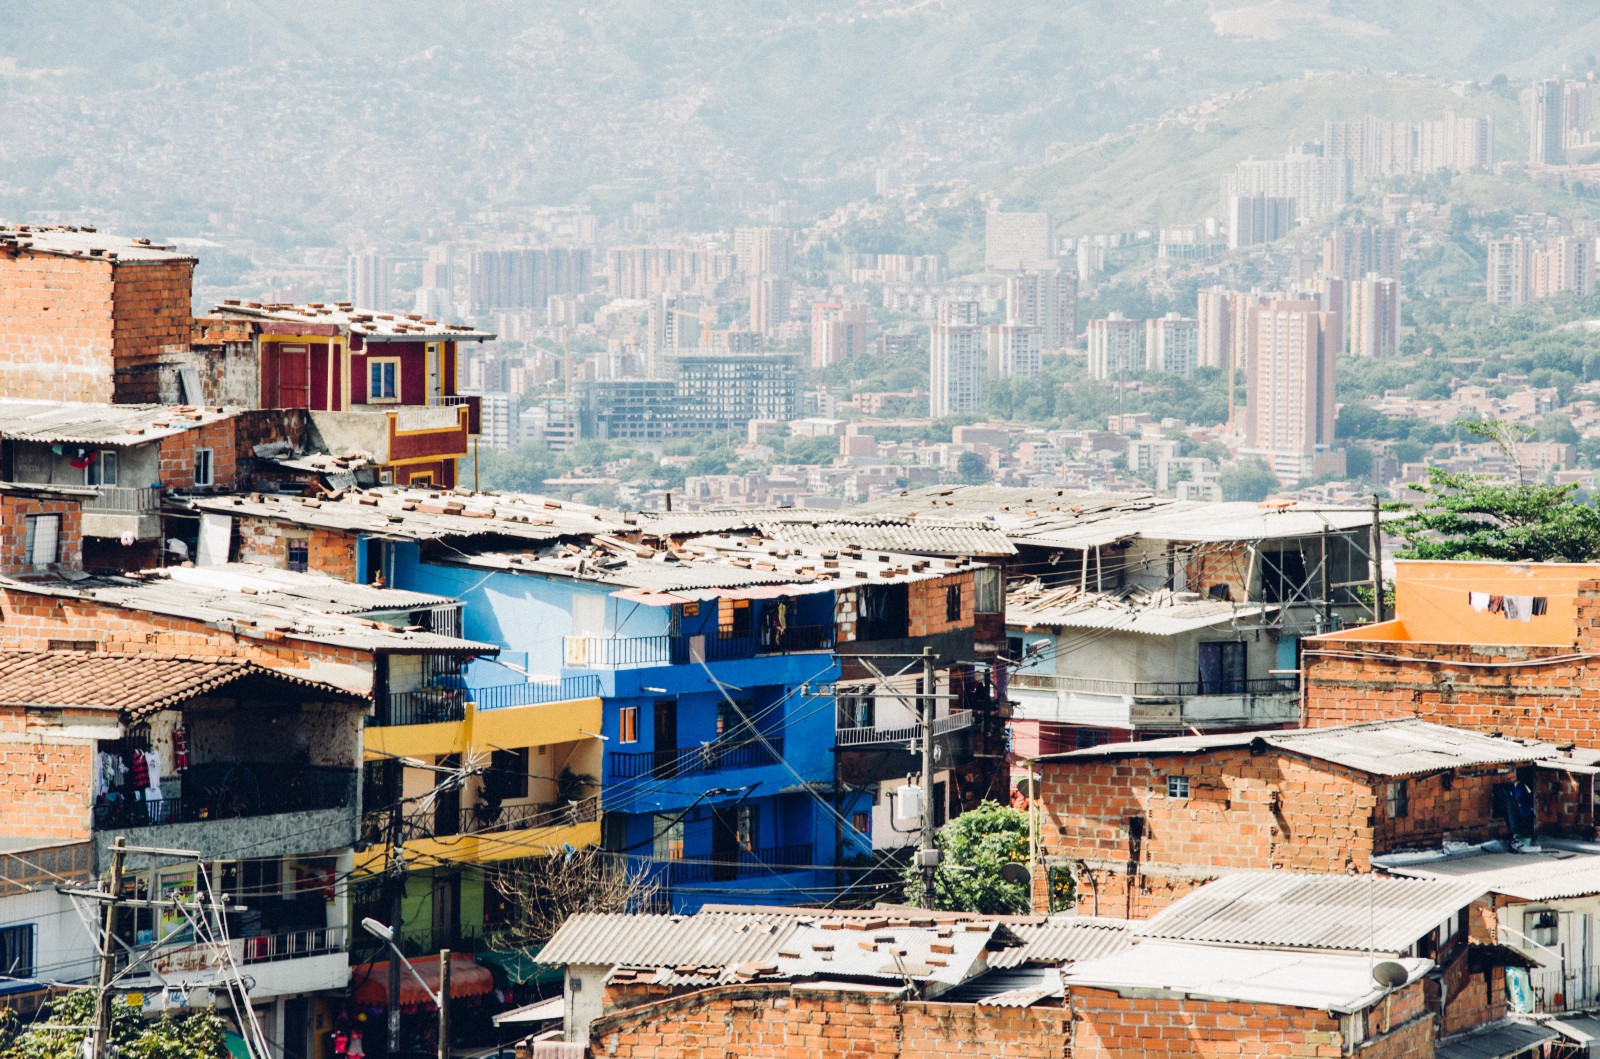 Medellin, Colombia - Digital Nomads